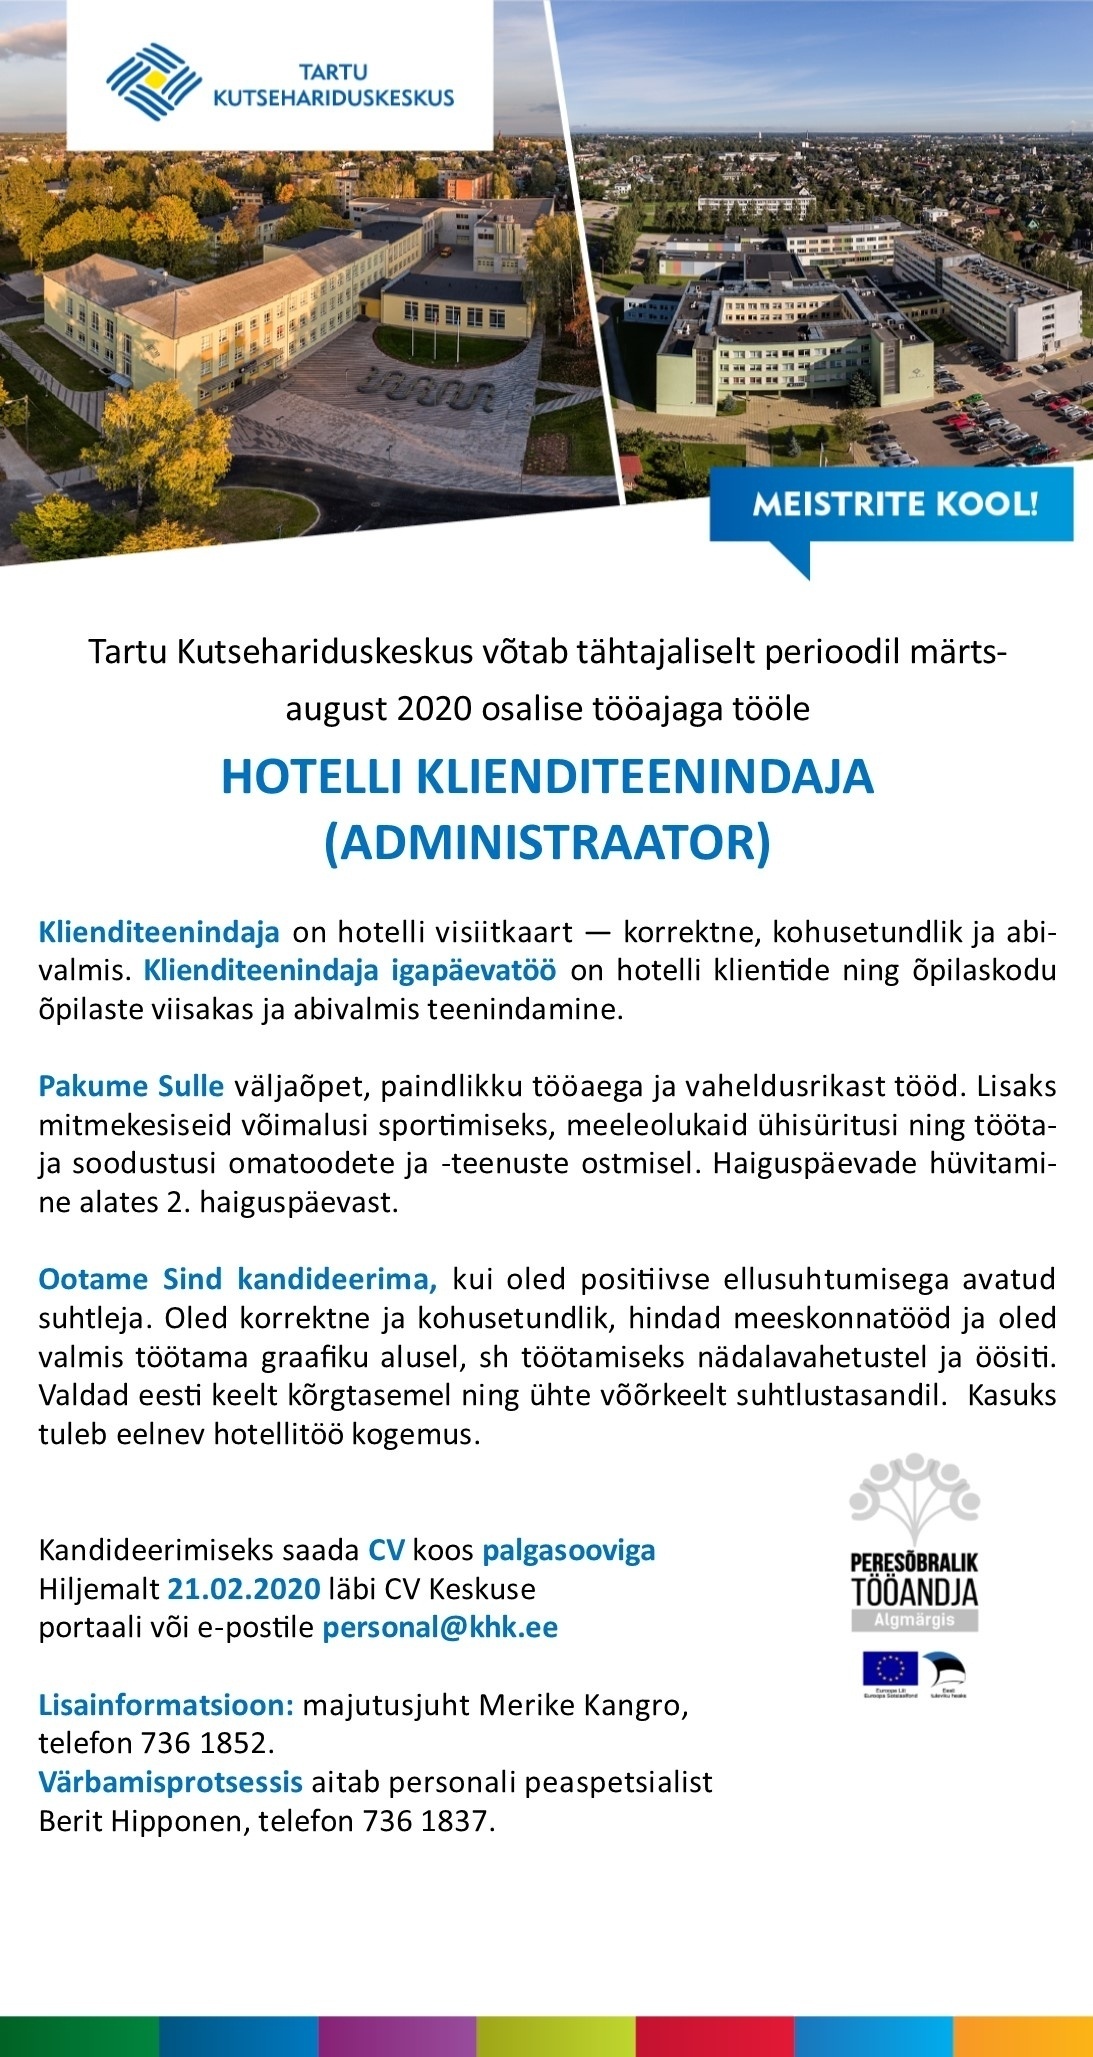 Tartu Kutsehariduskeskus Hotelli klienditeenindaja (osaline tööaeg, tähtajaline)